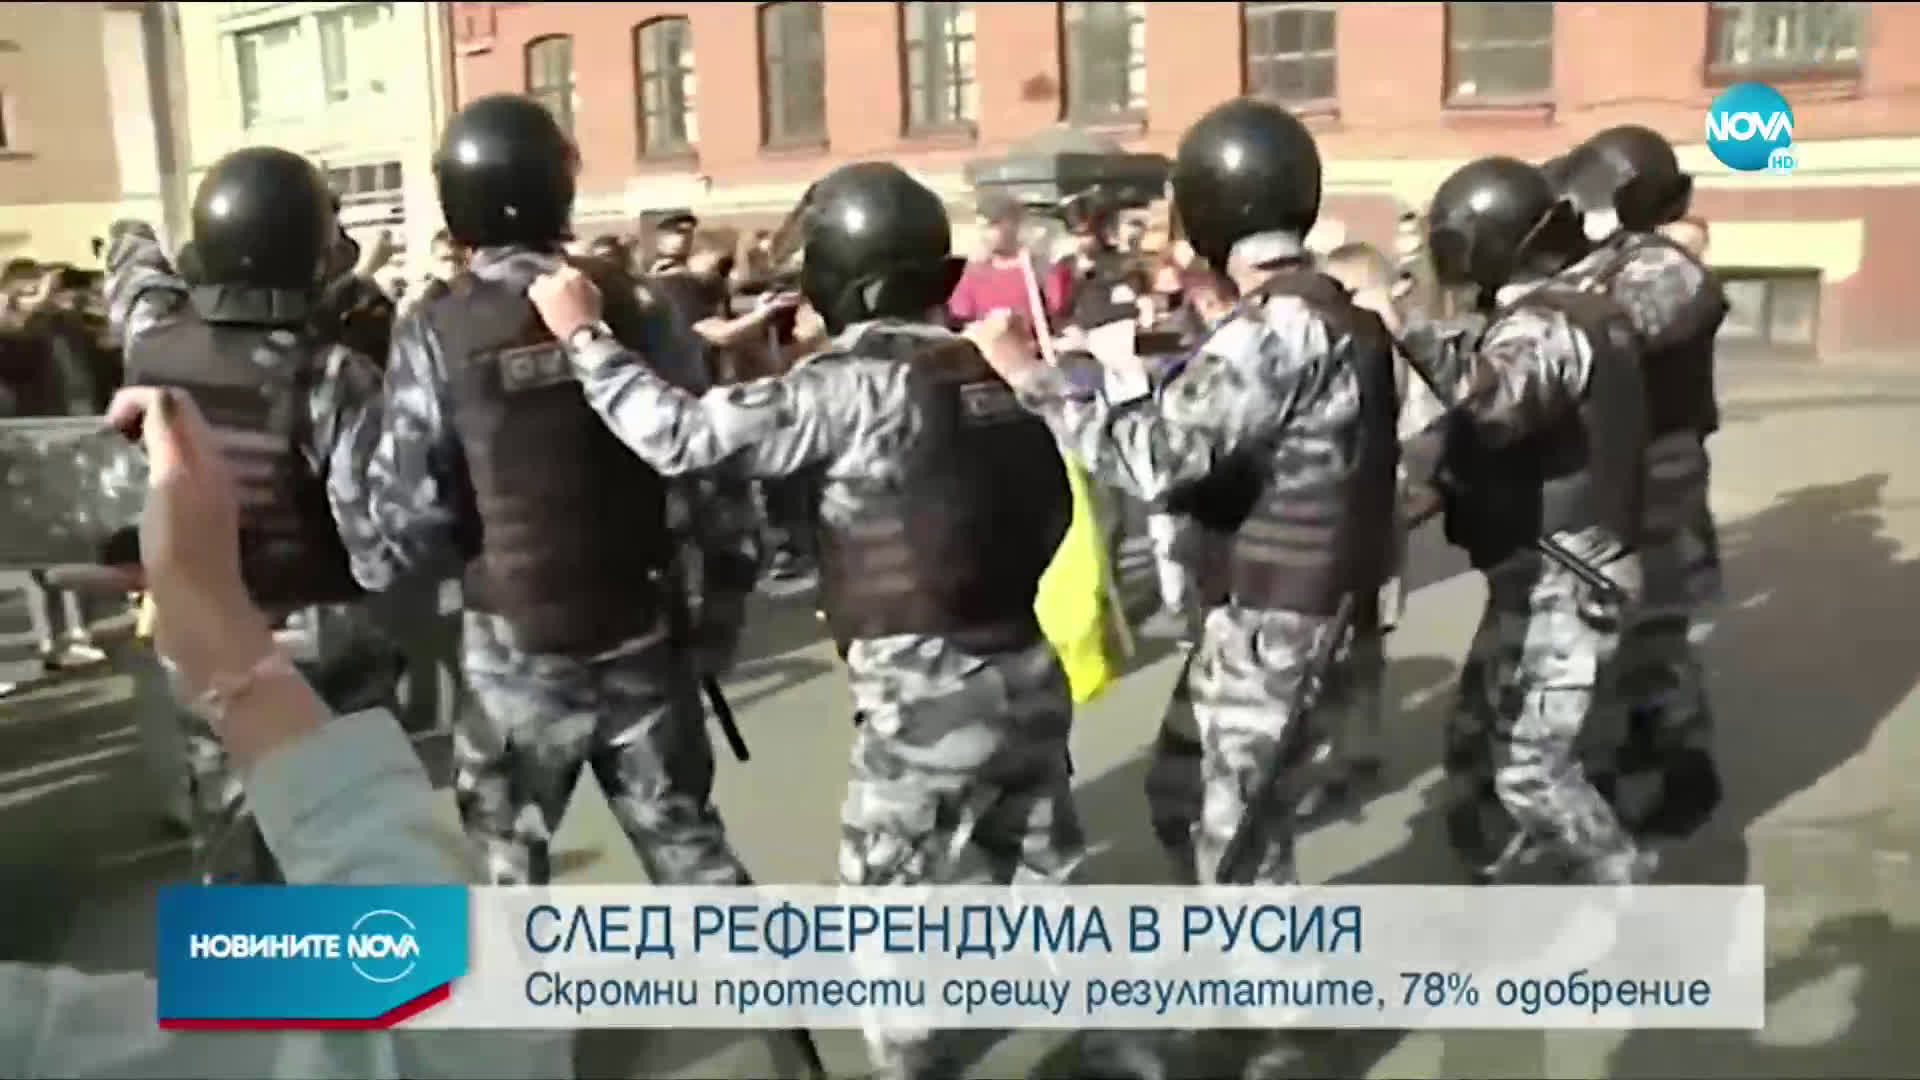 Малобройни протести в Русия след референдума за промени в Конституцията